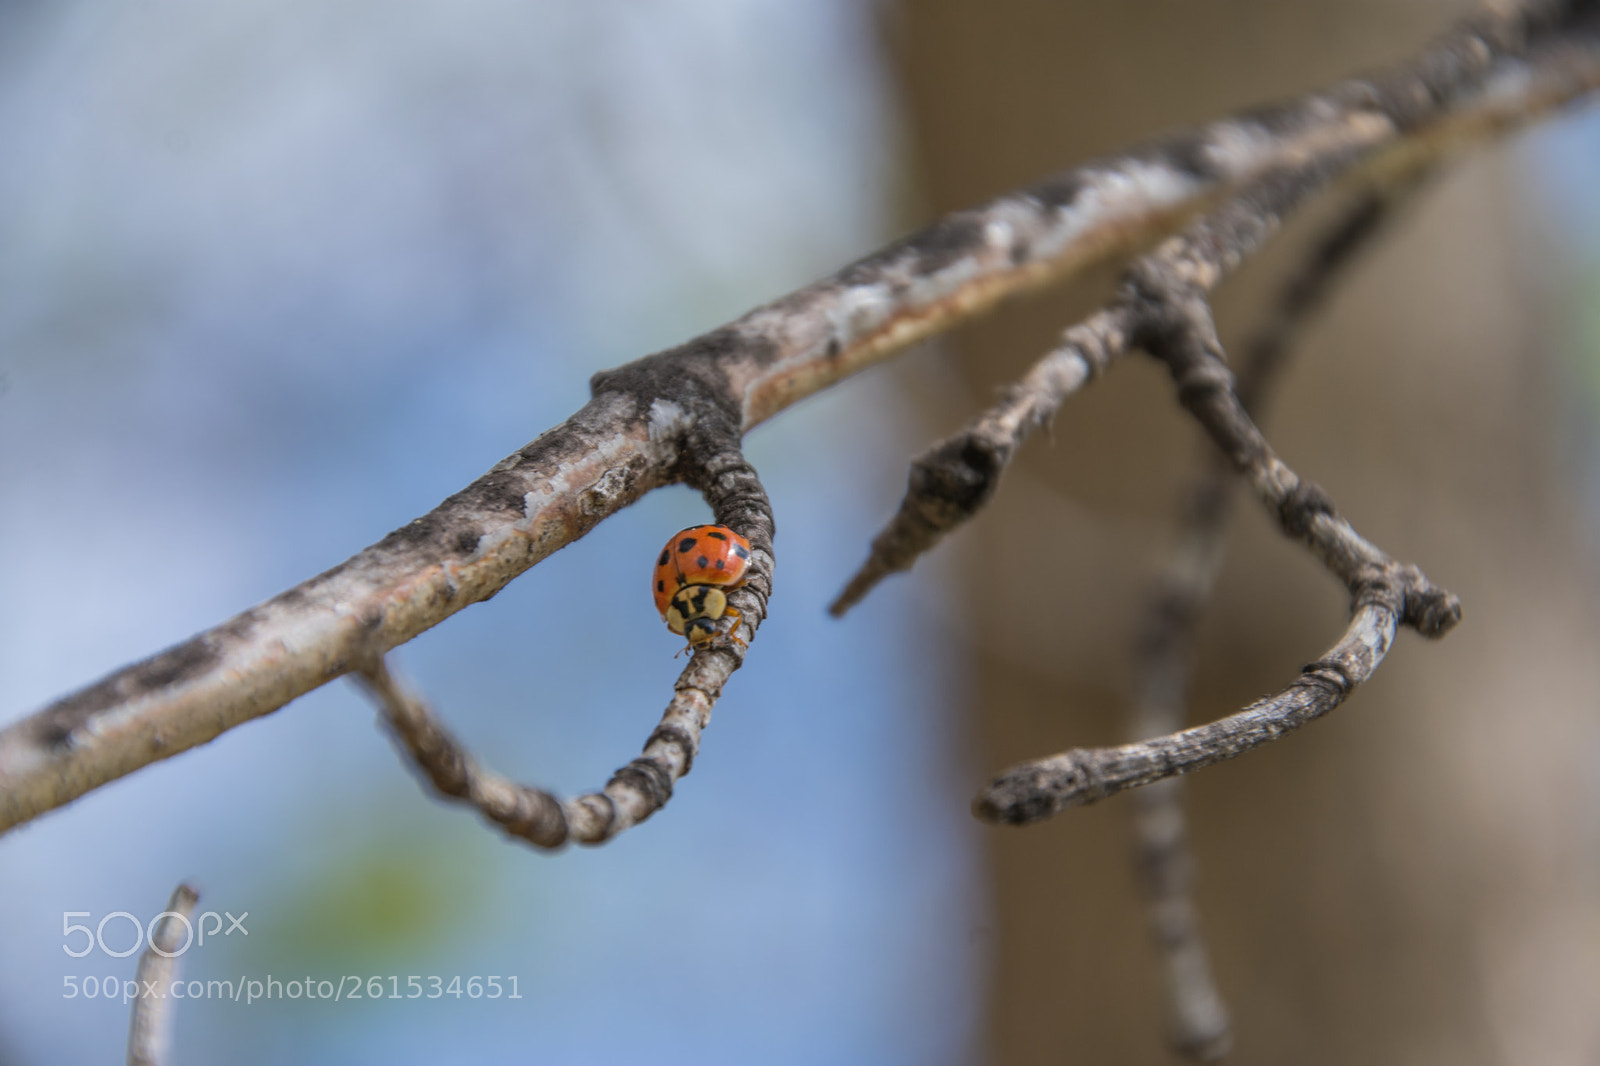 Nikon D3400 sample photo. Ladybug on a twig photography